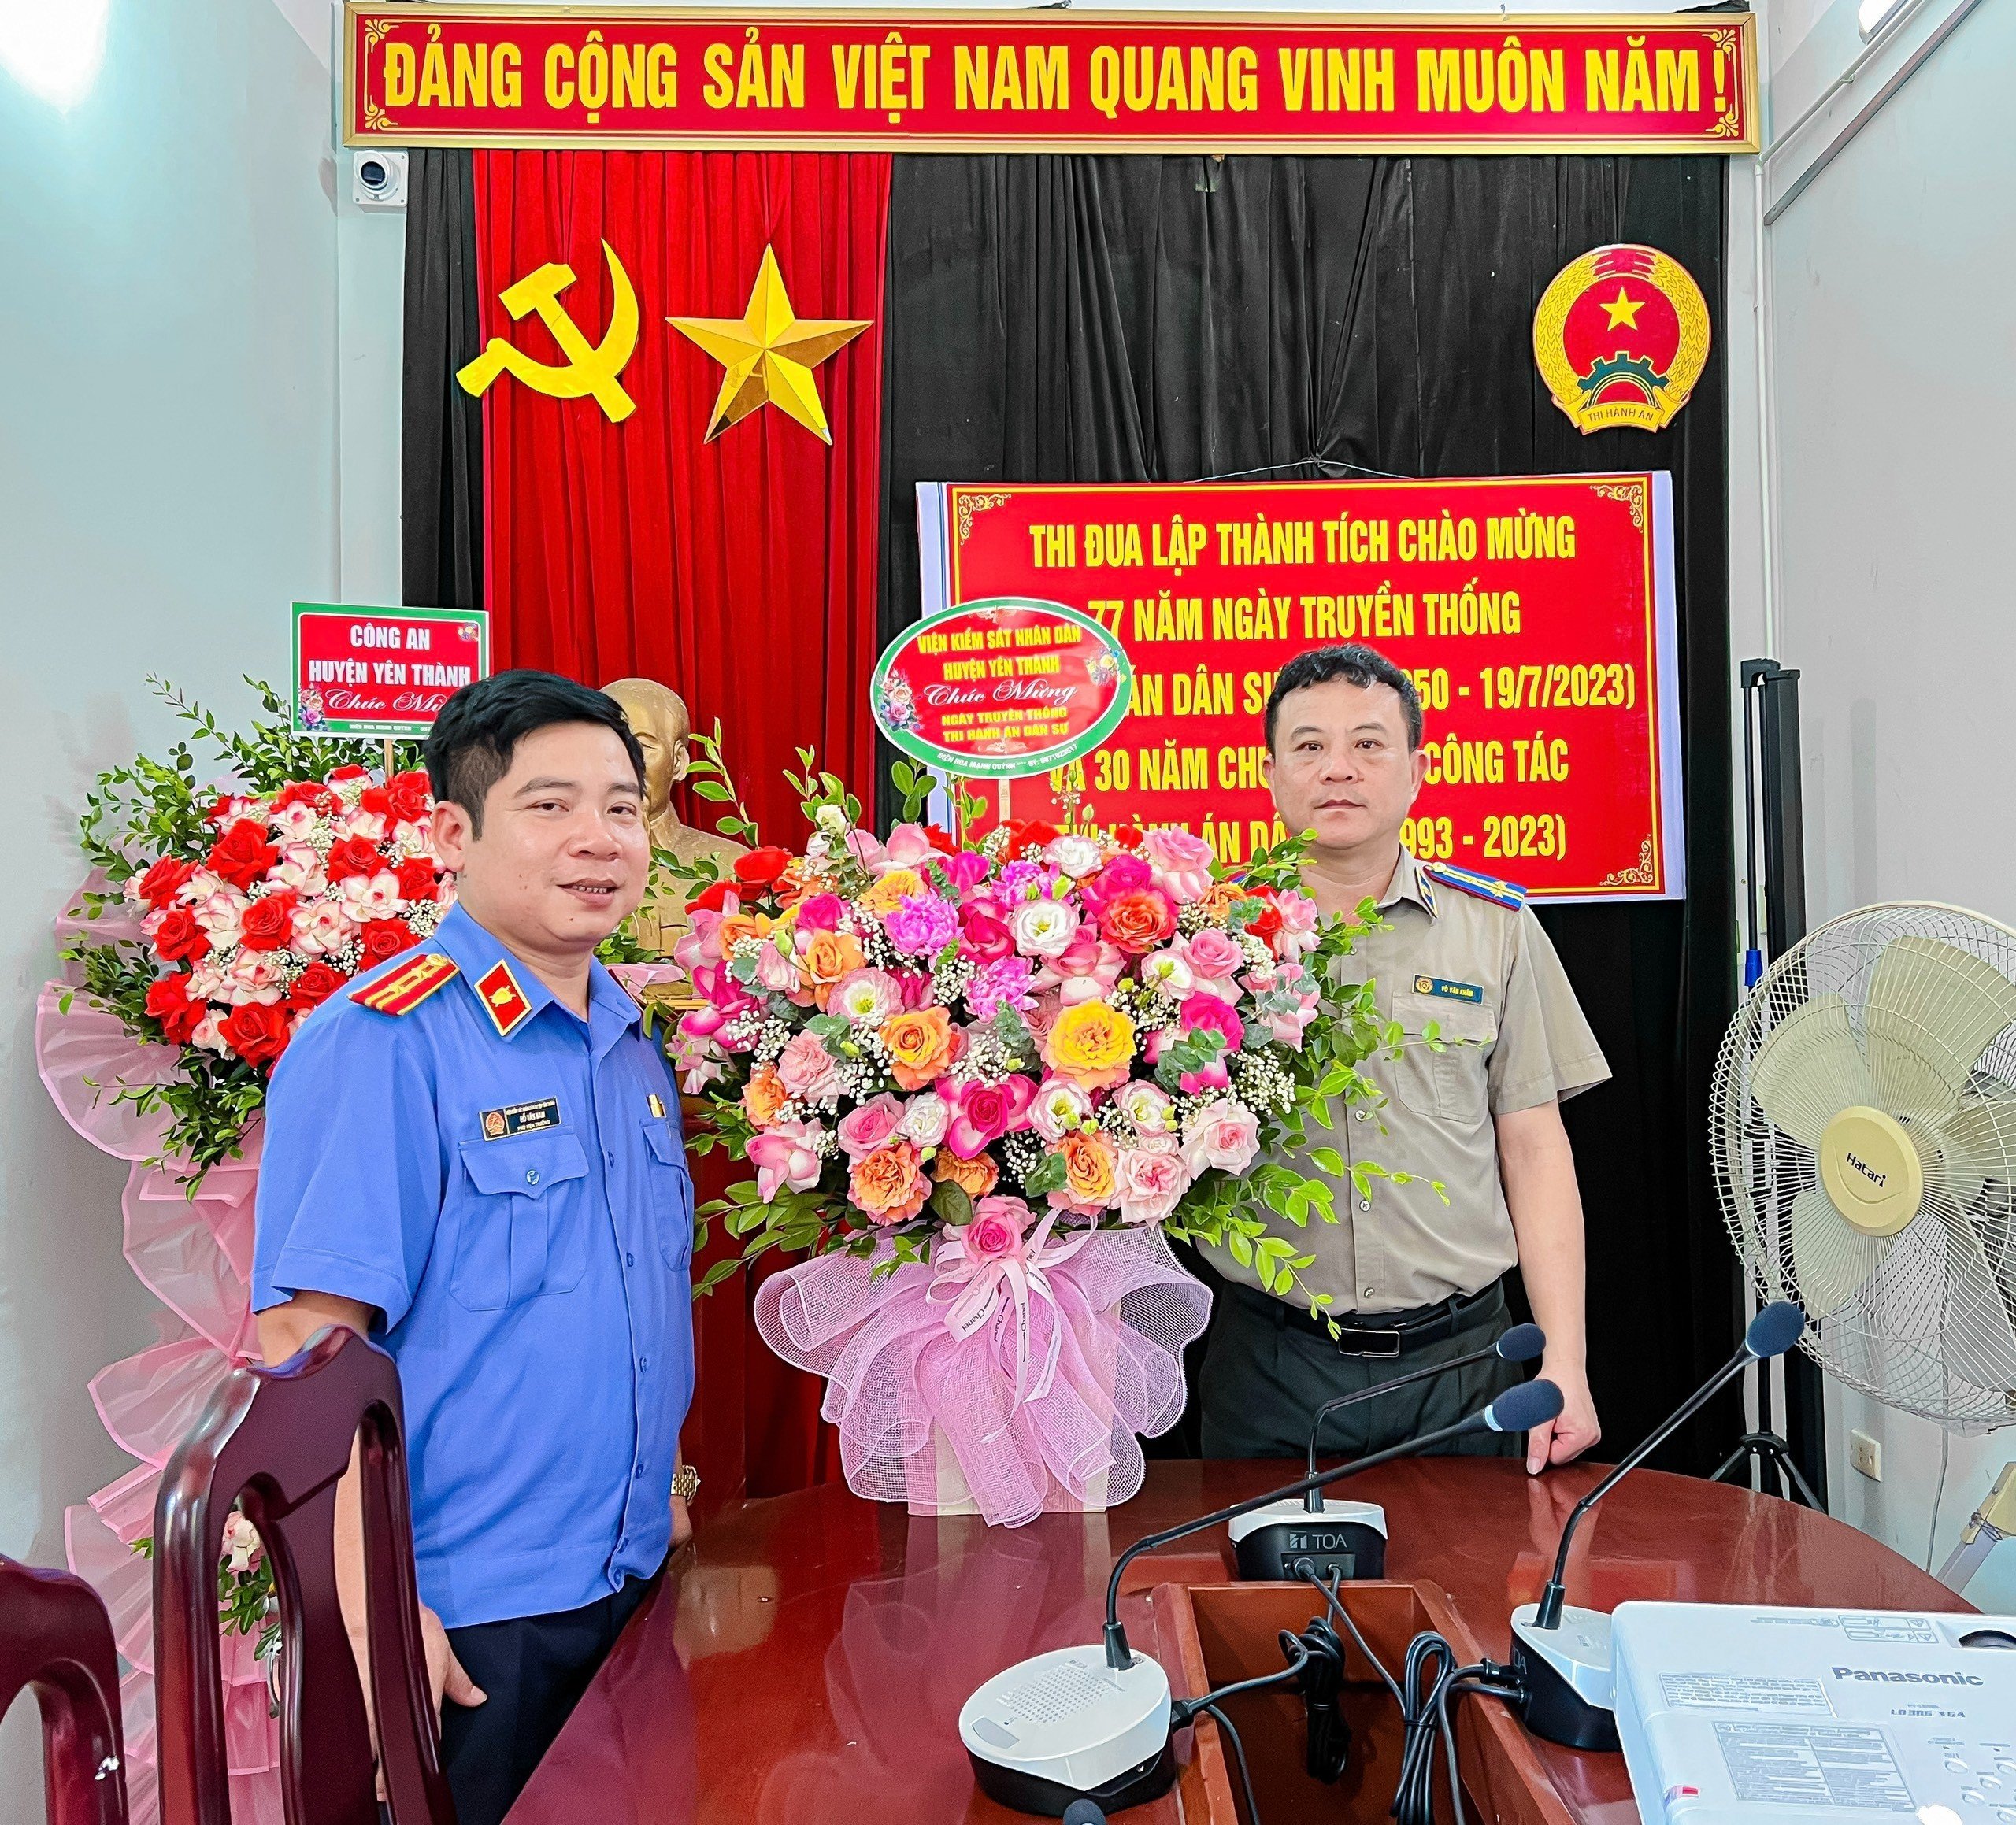 Chi cục THADS huyện Yên Thành: Chào mừng kỷ niệm 77 năm ngày truyền thống Thi hành án dân sự (19/7/1946 – 19/7/2023) và 30 năm chuyển giao công tác (1993 – 2023)